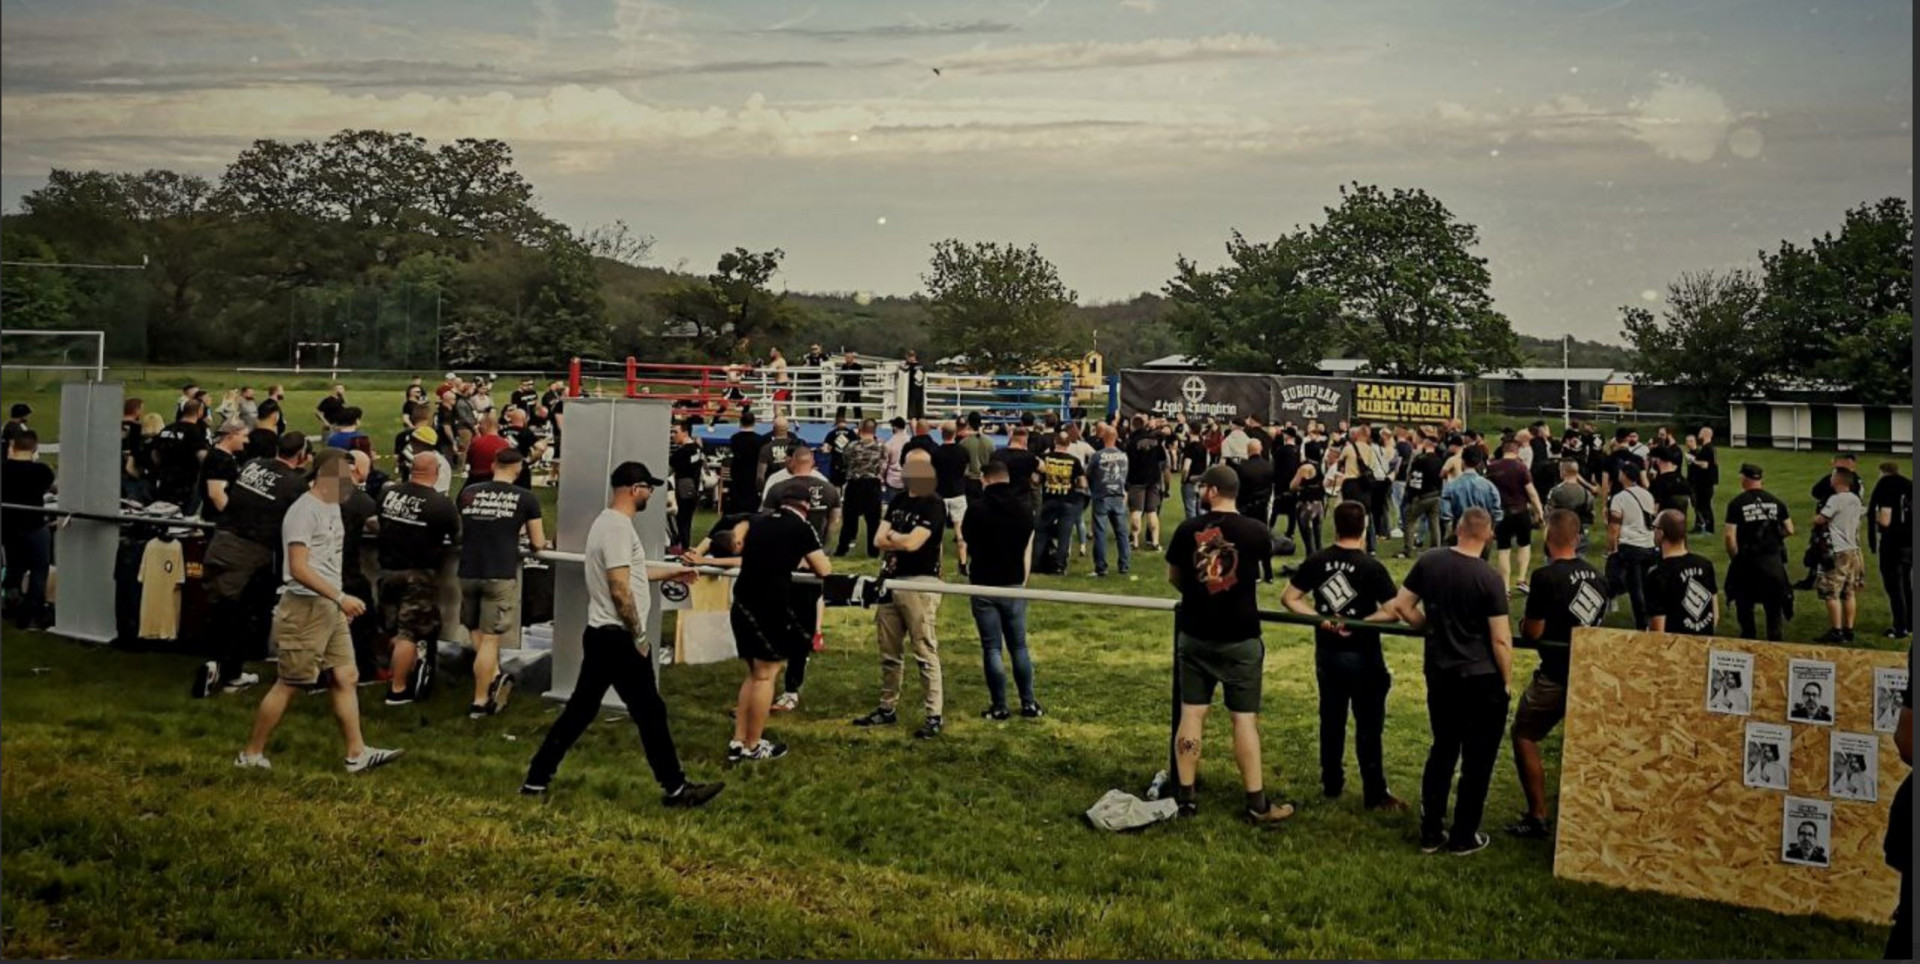 Mégsem Budapest ad otthont a sportrendezvénynek álcázott neonáci találkozónak